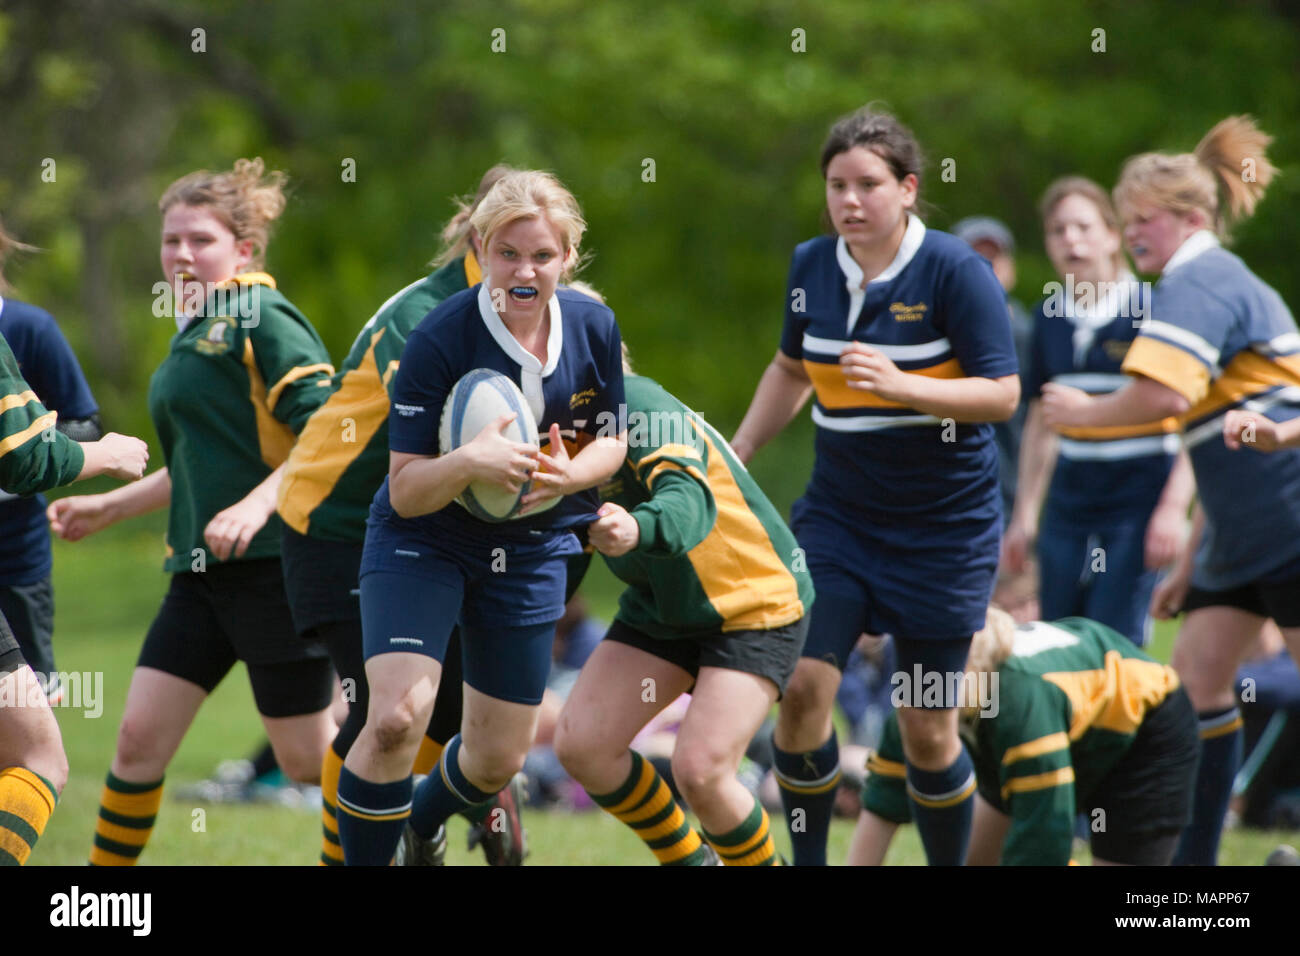 Chica corriendo con la bola en el partido de rugby Foto de stock